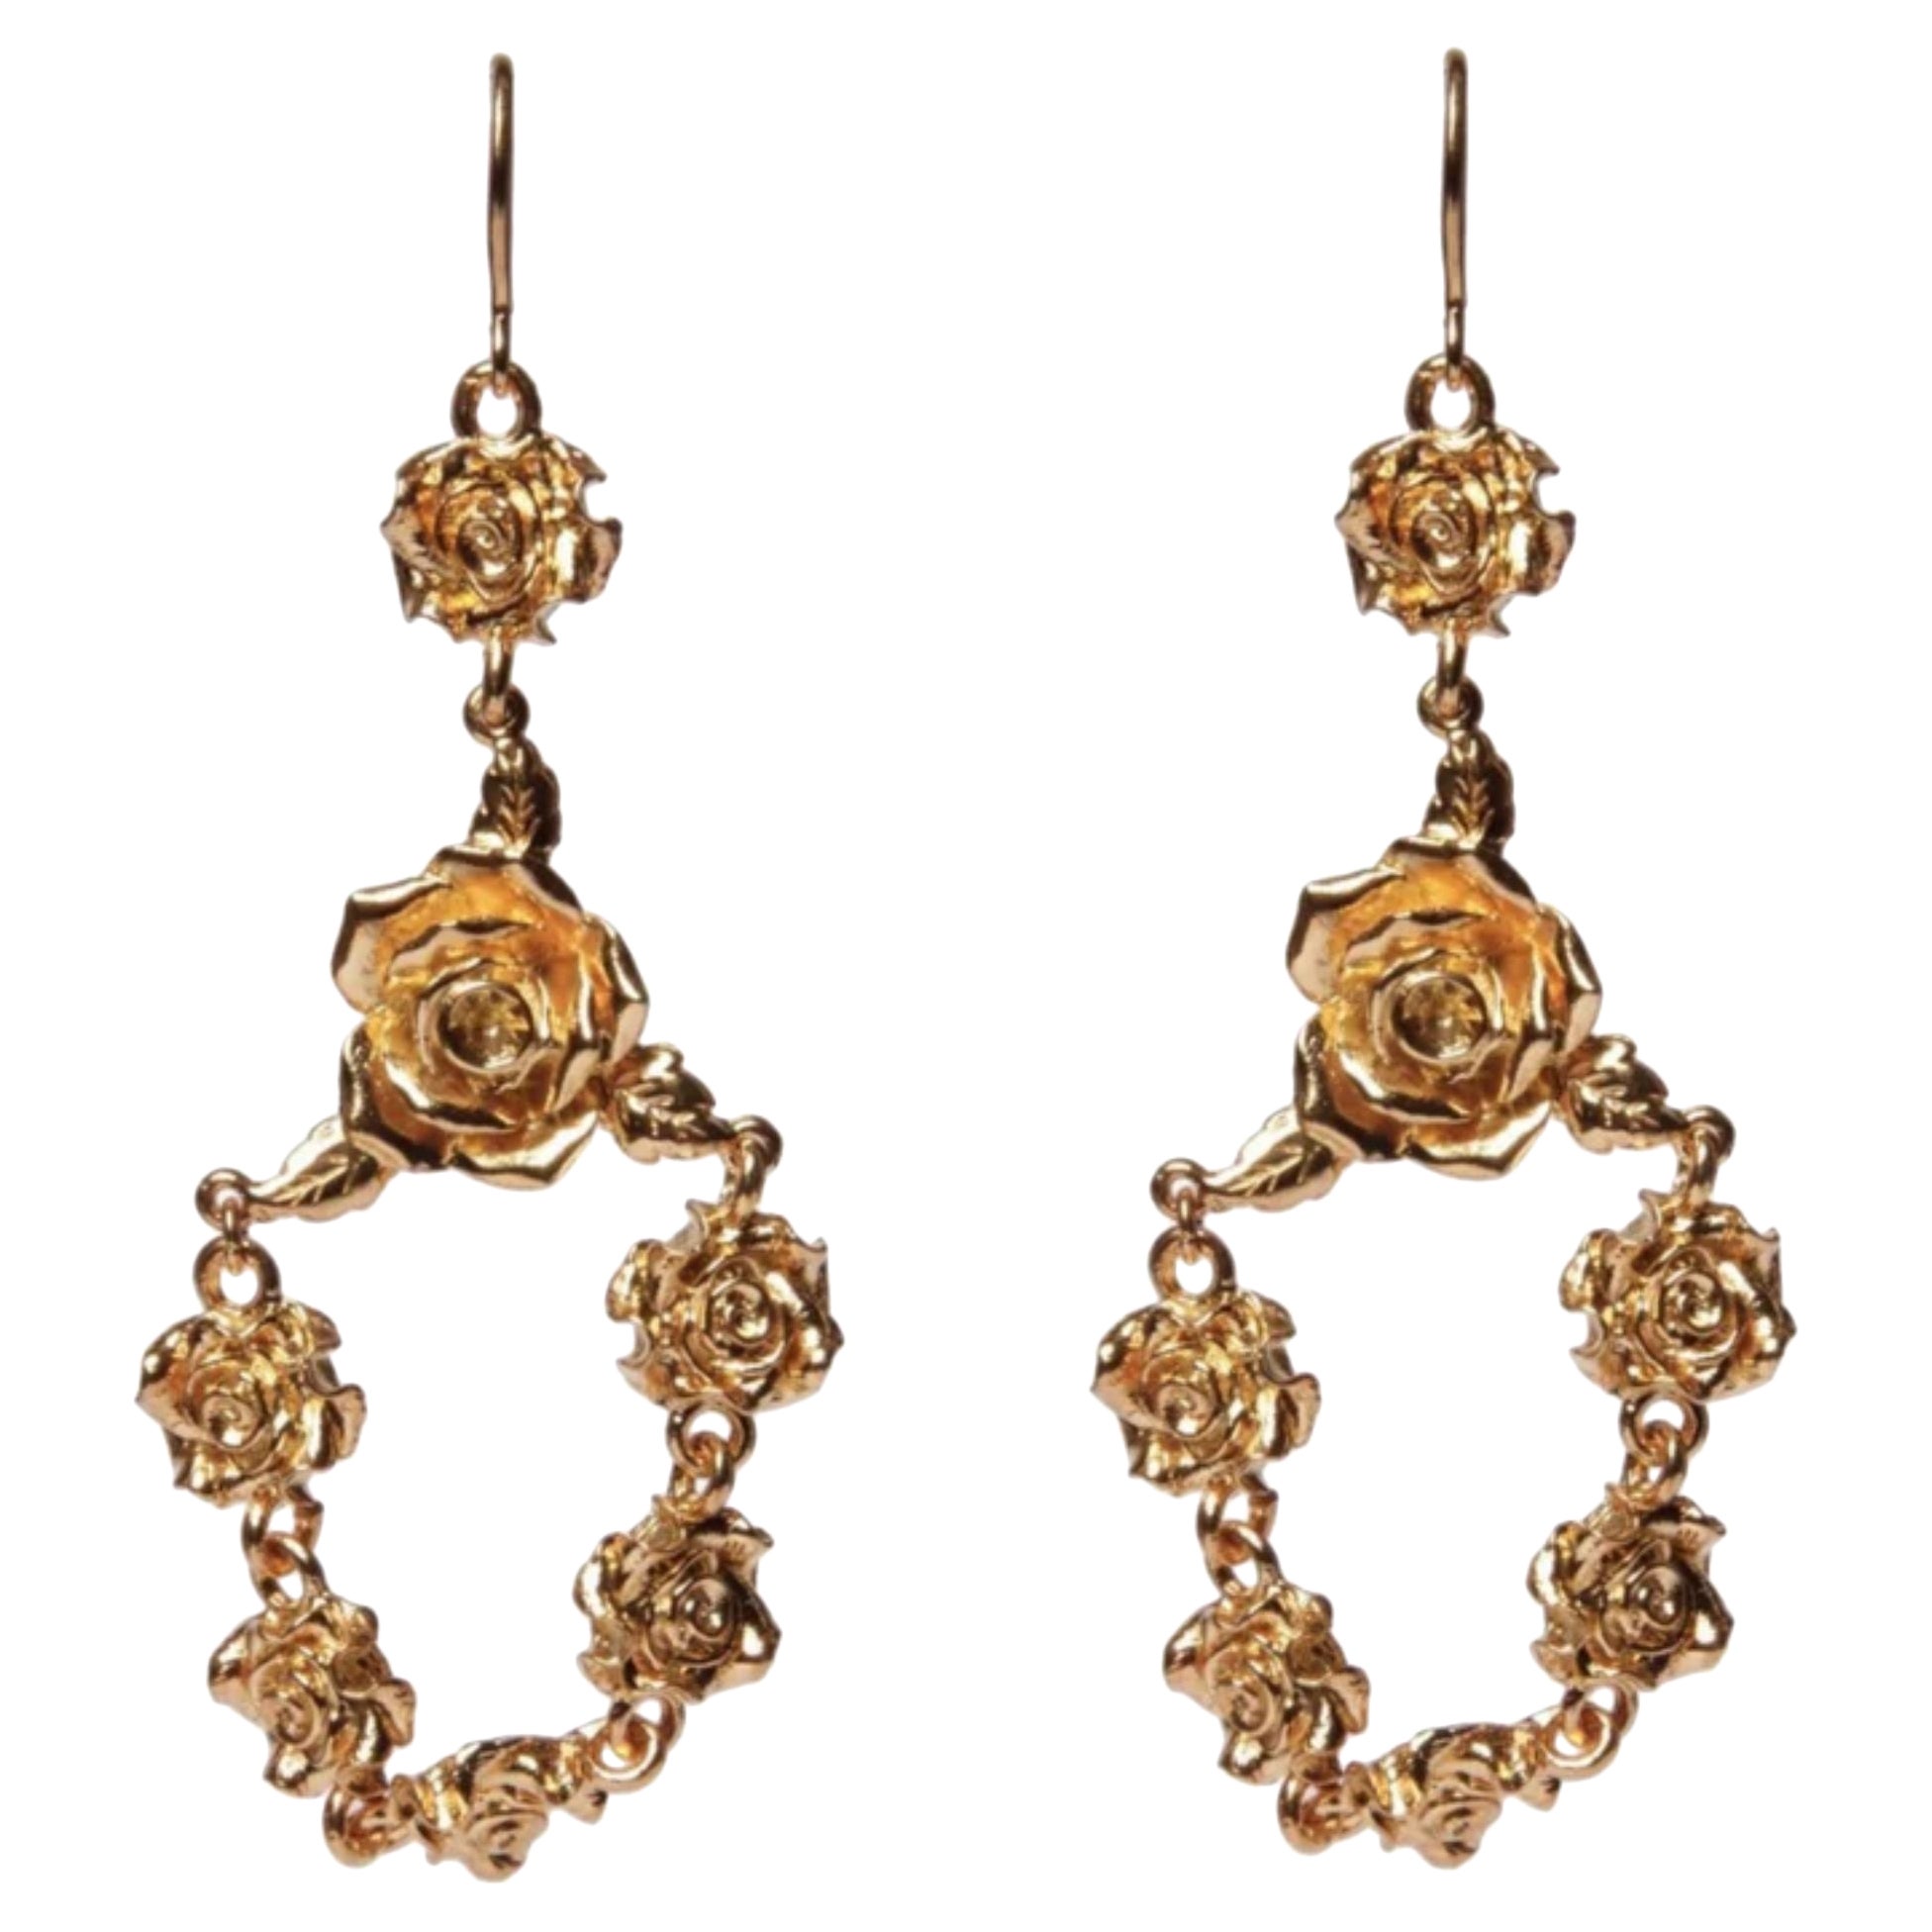 24K Gold Rosette Chandelier Earrings Plated on Brass